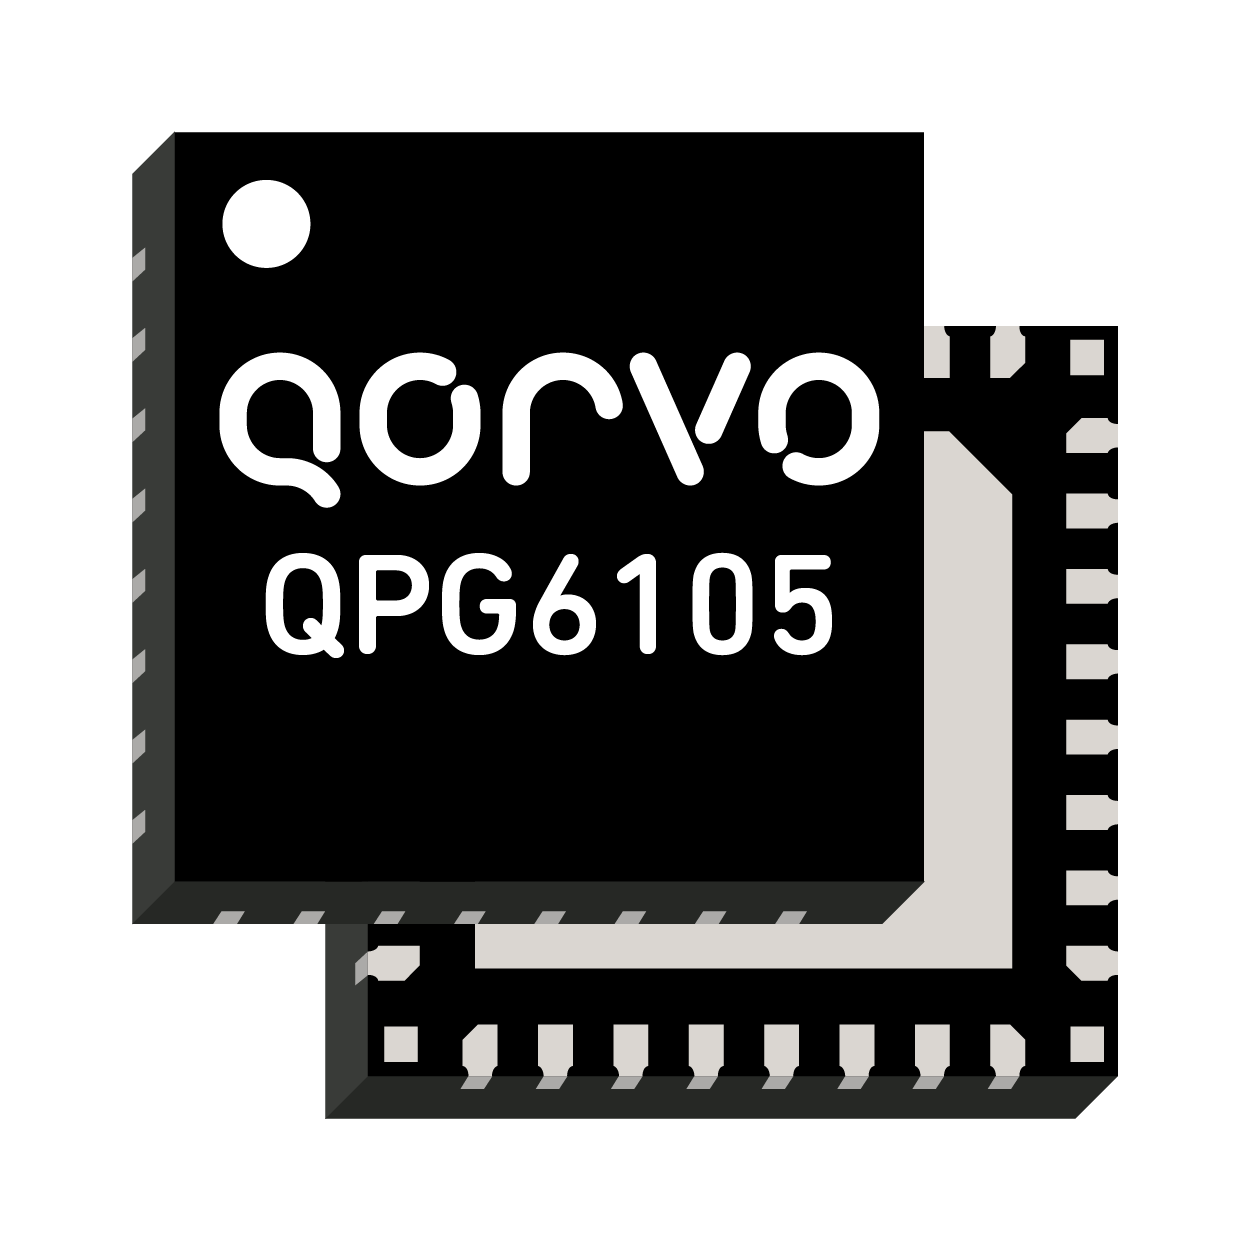 QPG6100